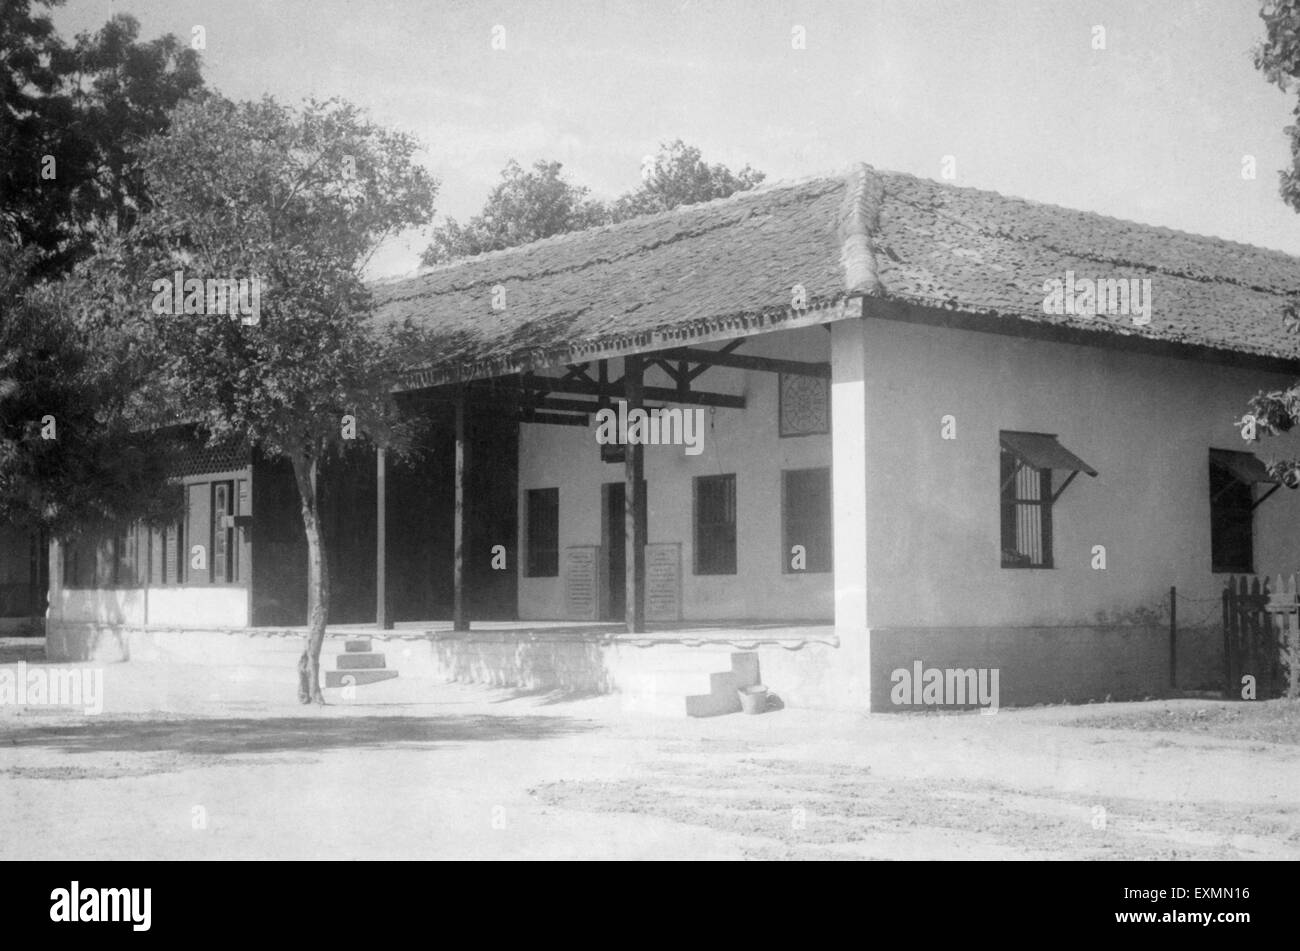 Hriday Kunj, maison Mahatma Gandhi, Satyagraha Ashram, Wadaj, Ahmedabad, Gujarat, Inde, 1960, Inde, Asie, ancienne image vintage du 1900 Banque D'Images